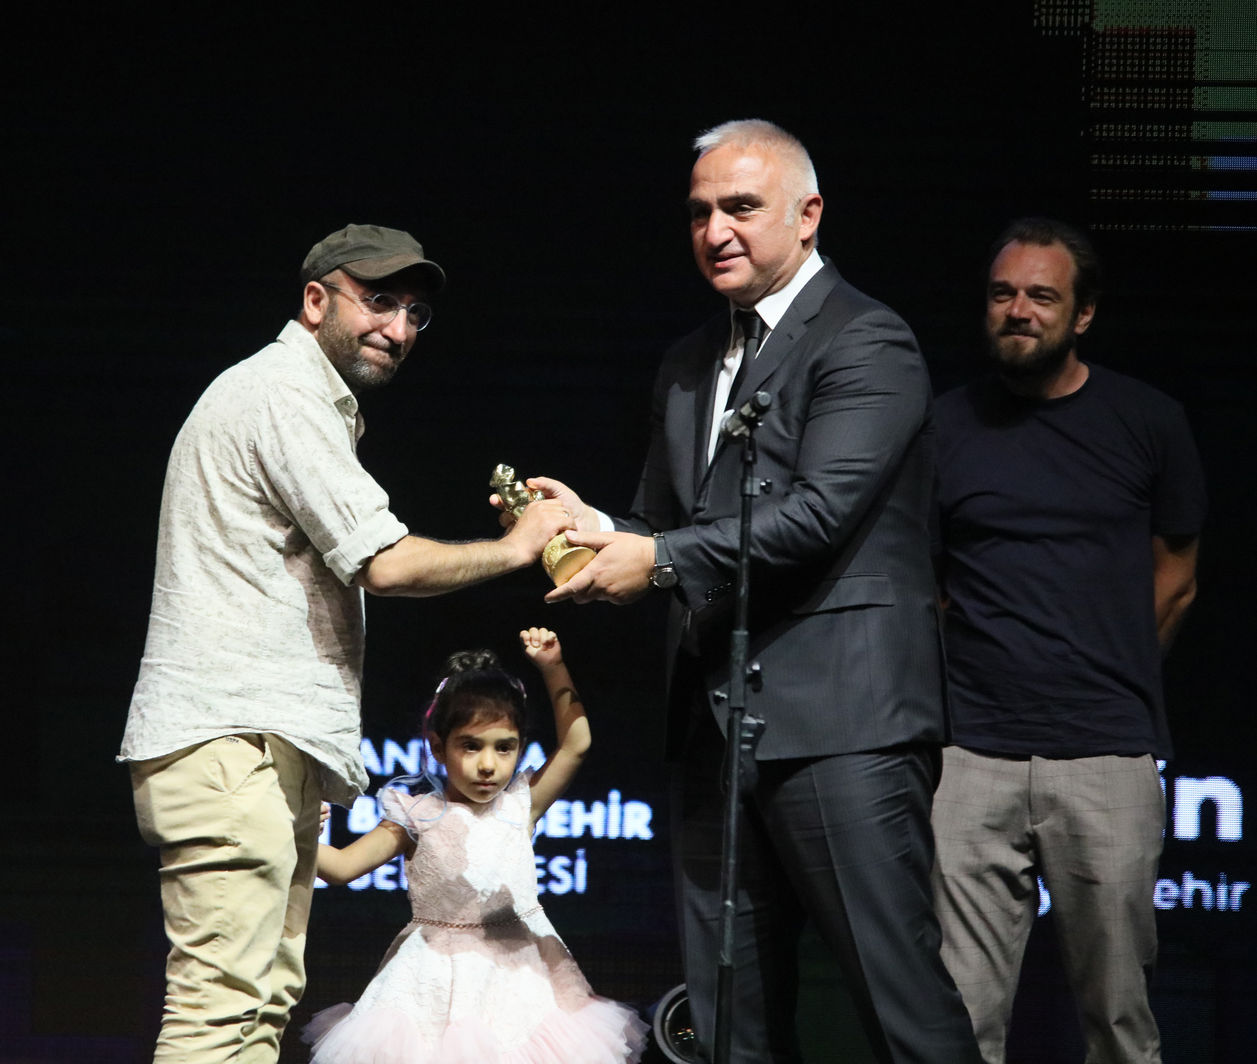 Ferit Karahan, Antalya Film Festivali'nde &ouml;d&uuml;l&uuml;n&uuml; K&uuml;lt&uuml;r ve Turizm Bakanı Mehmet Nuri Ersoy'un elinden aldı. Karahan, sahneye kızıyla birlikte &ccedil;ıktı. 